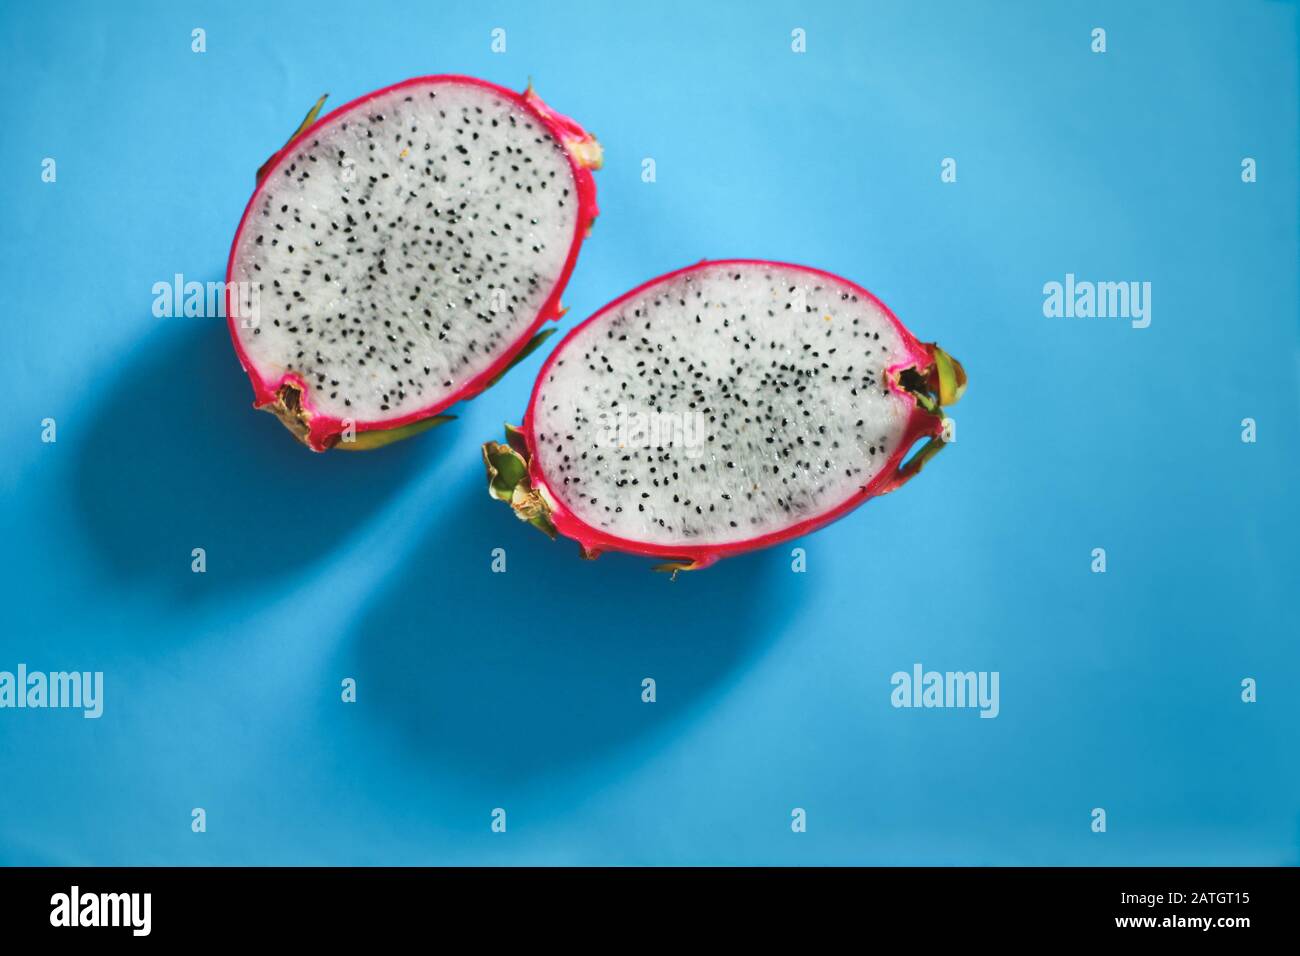 Frutta di dragaggio tagliata a fette o pitaya su sfondo blu brillante per mostrare contrasto di colore, concetto di divertimento, estate e cultura pop Foto Stock